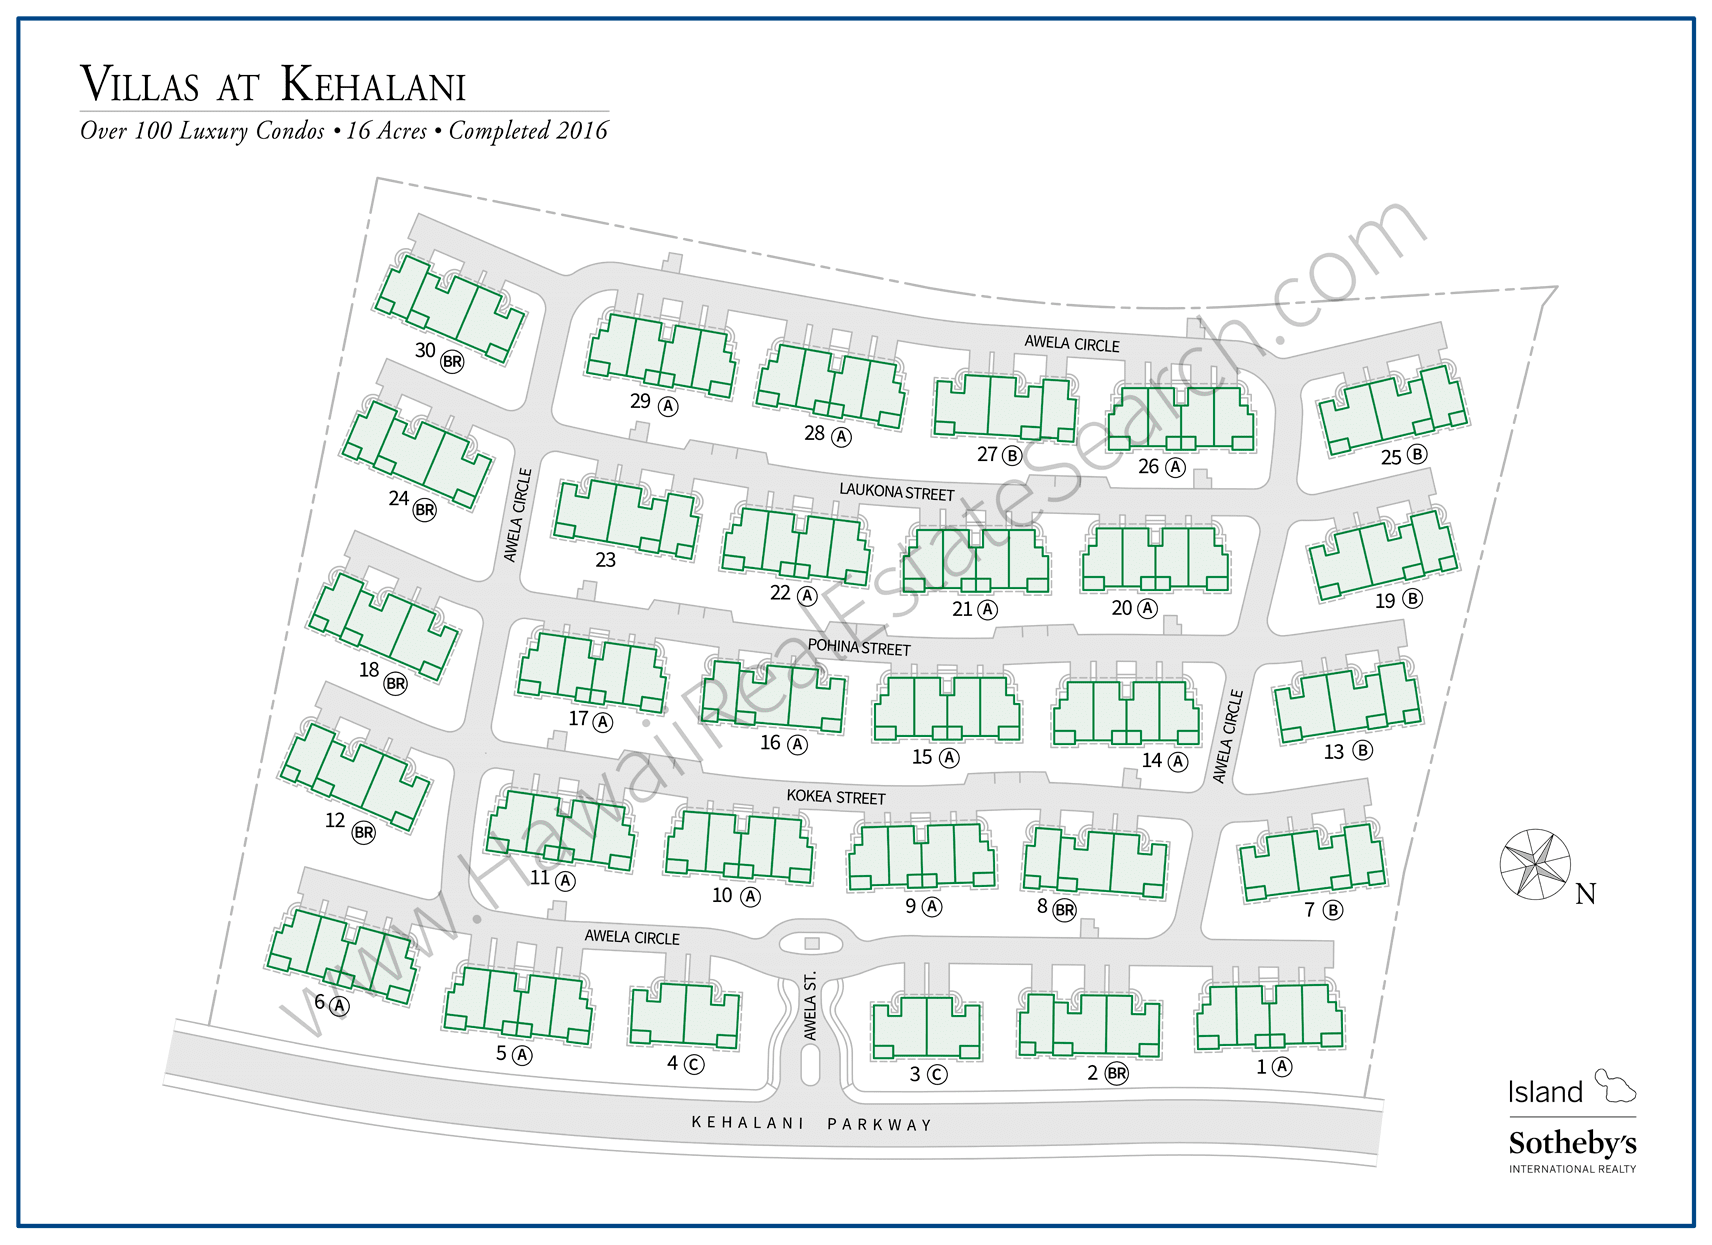 Villas at Kehalani Map 2019